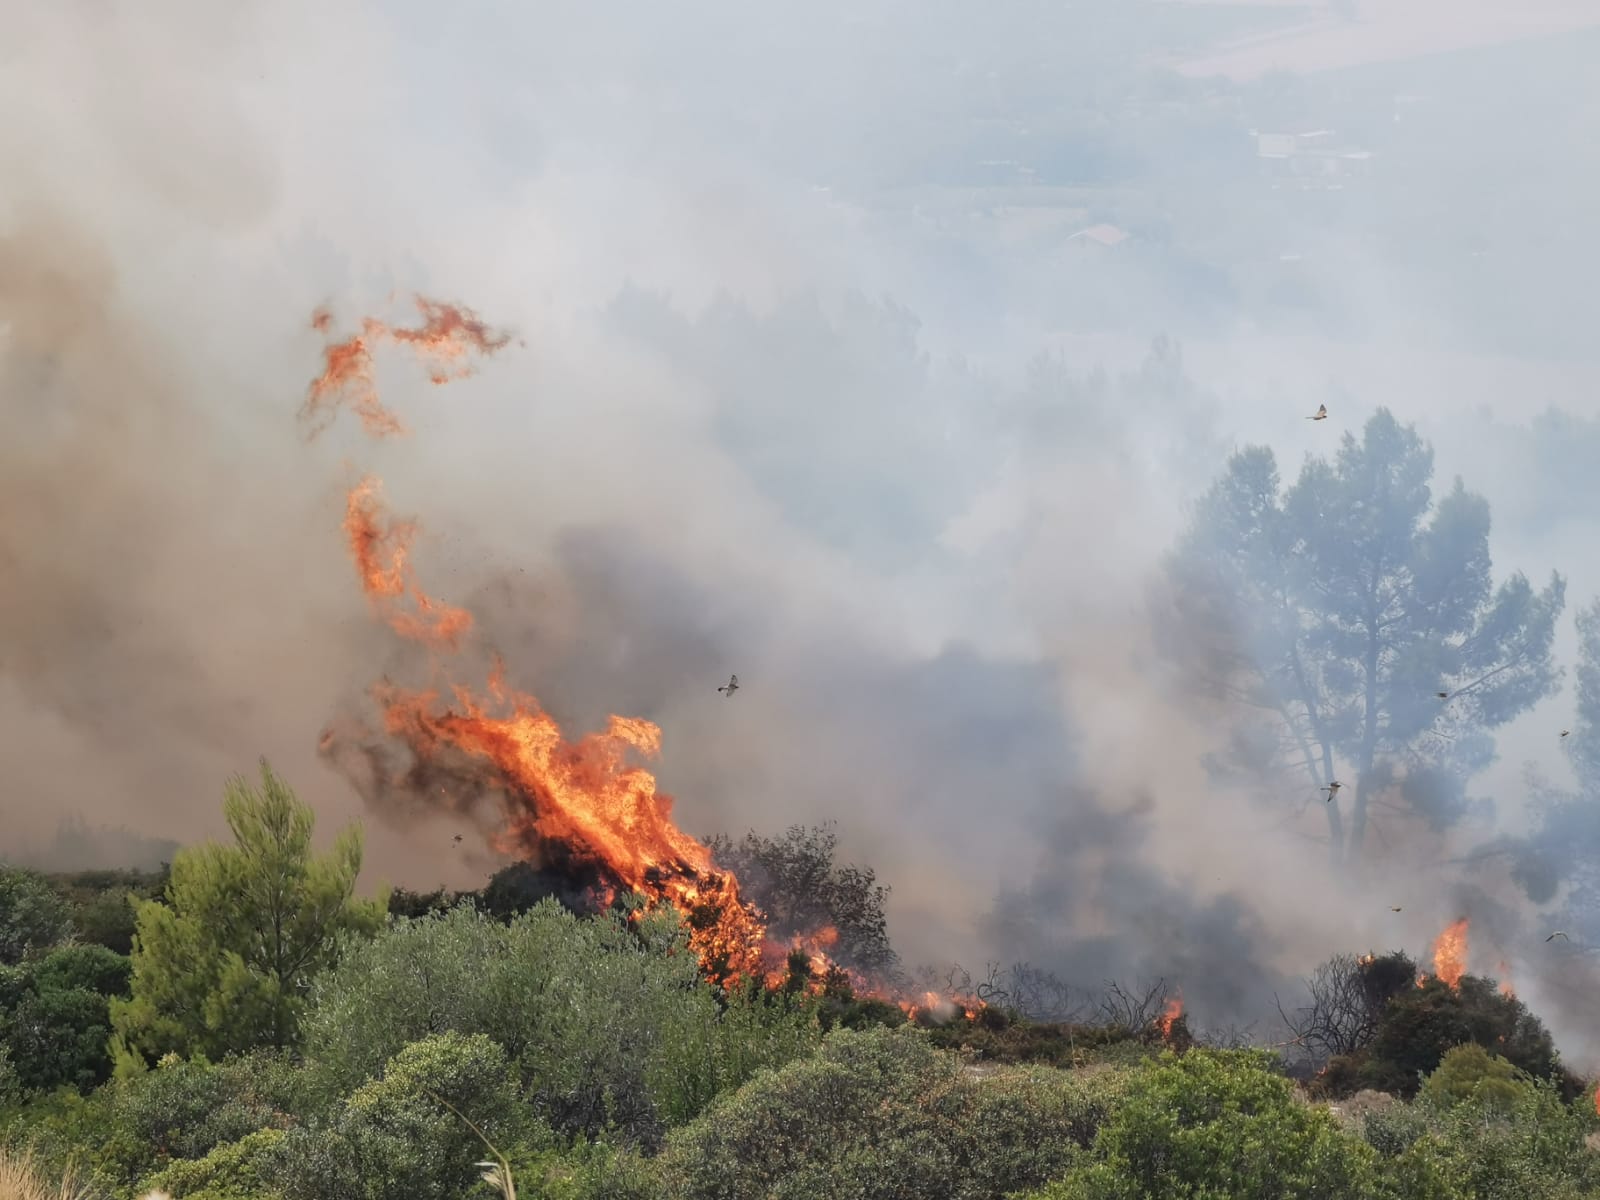 Matera, sterpaglie in fiamme nella zona Paip